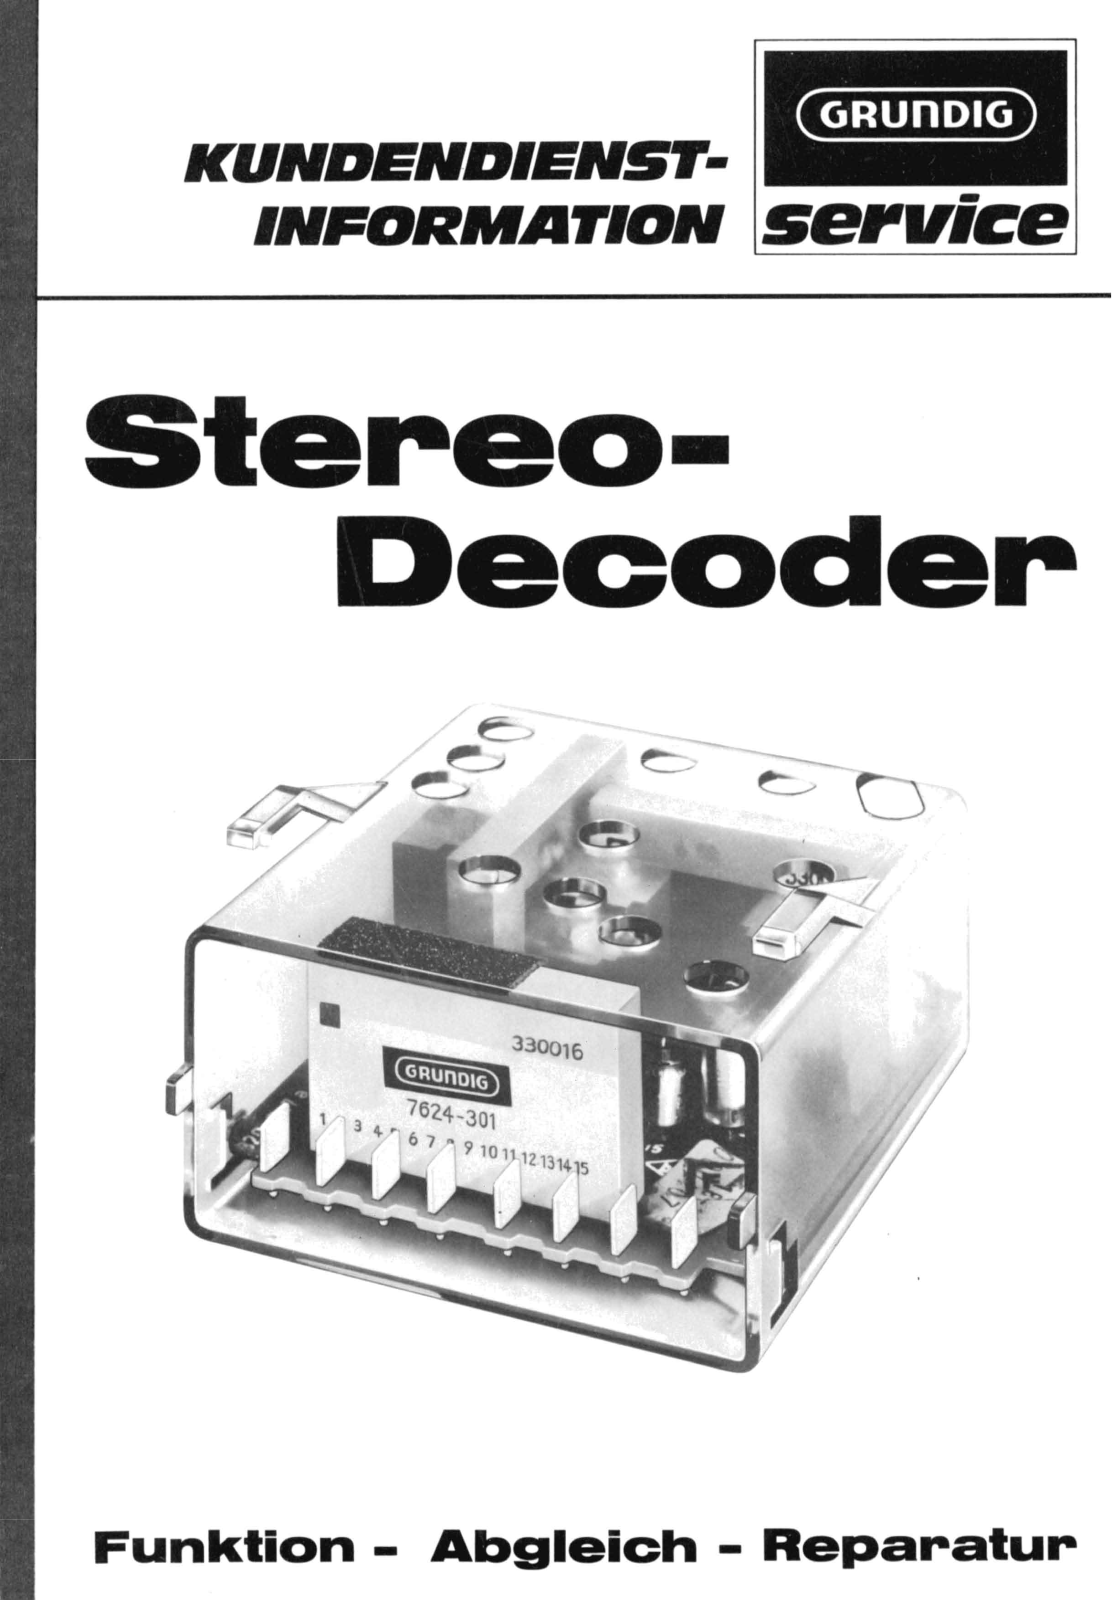 Grundig Stereo-Decoder Service Information